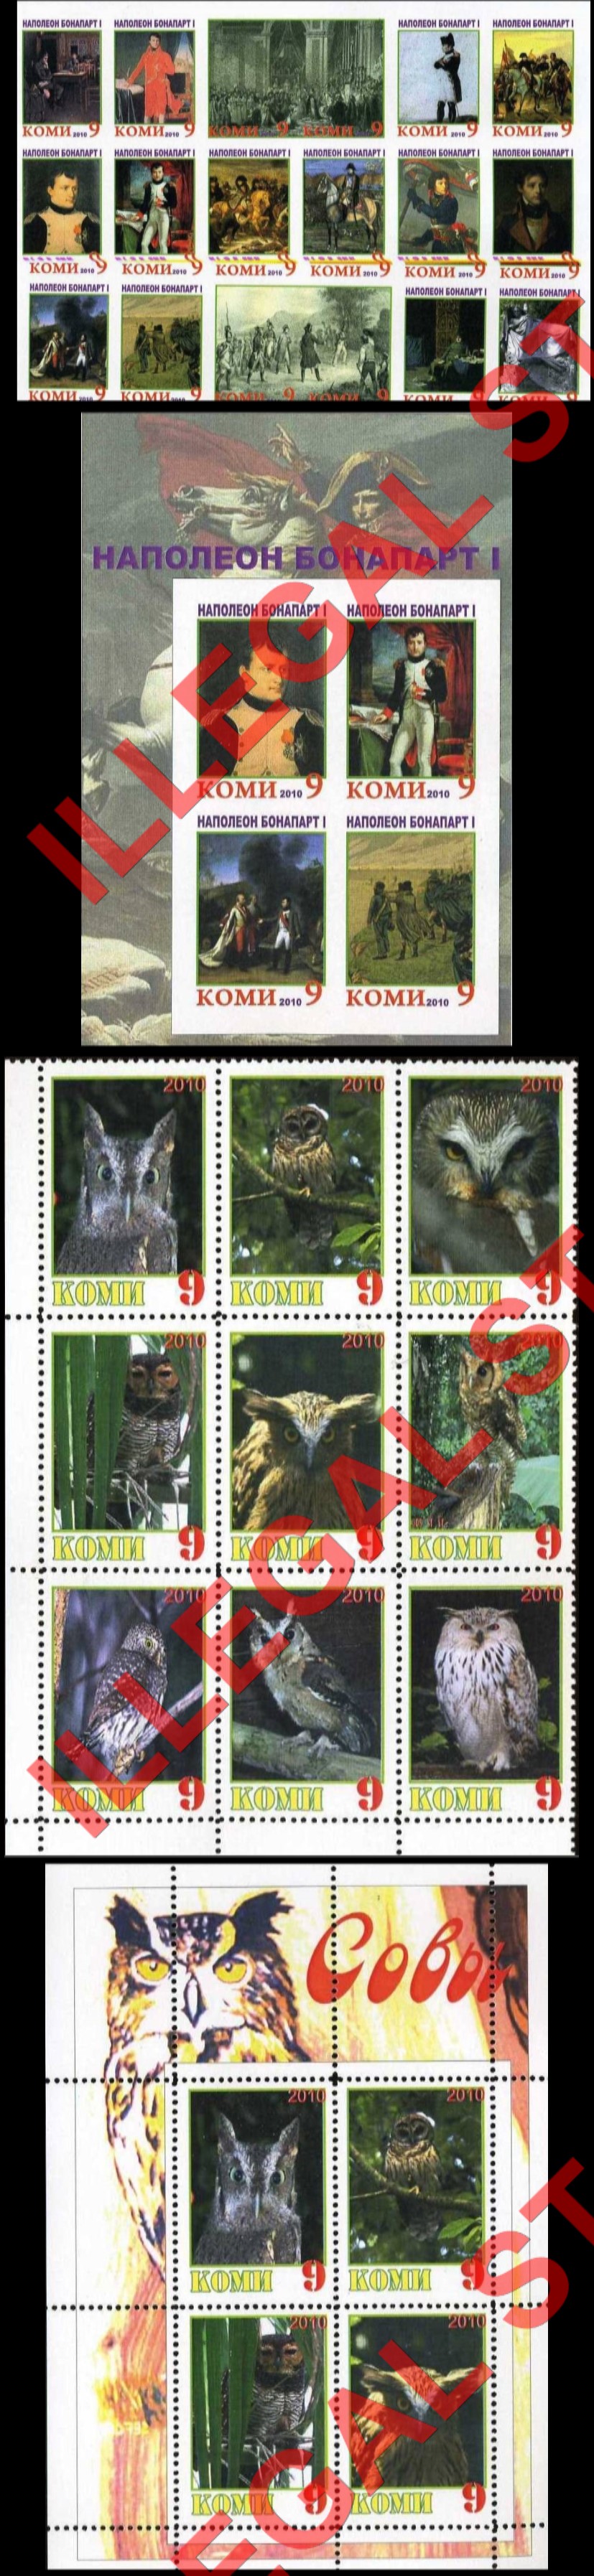 Komi Republic 2010 Counterfeit Illegal Stamps